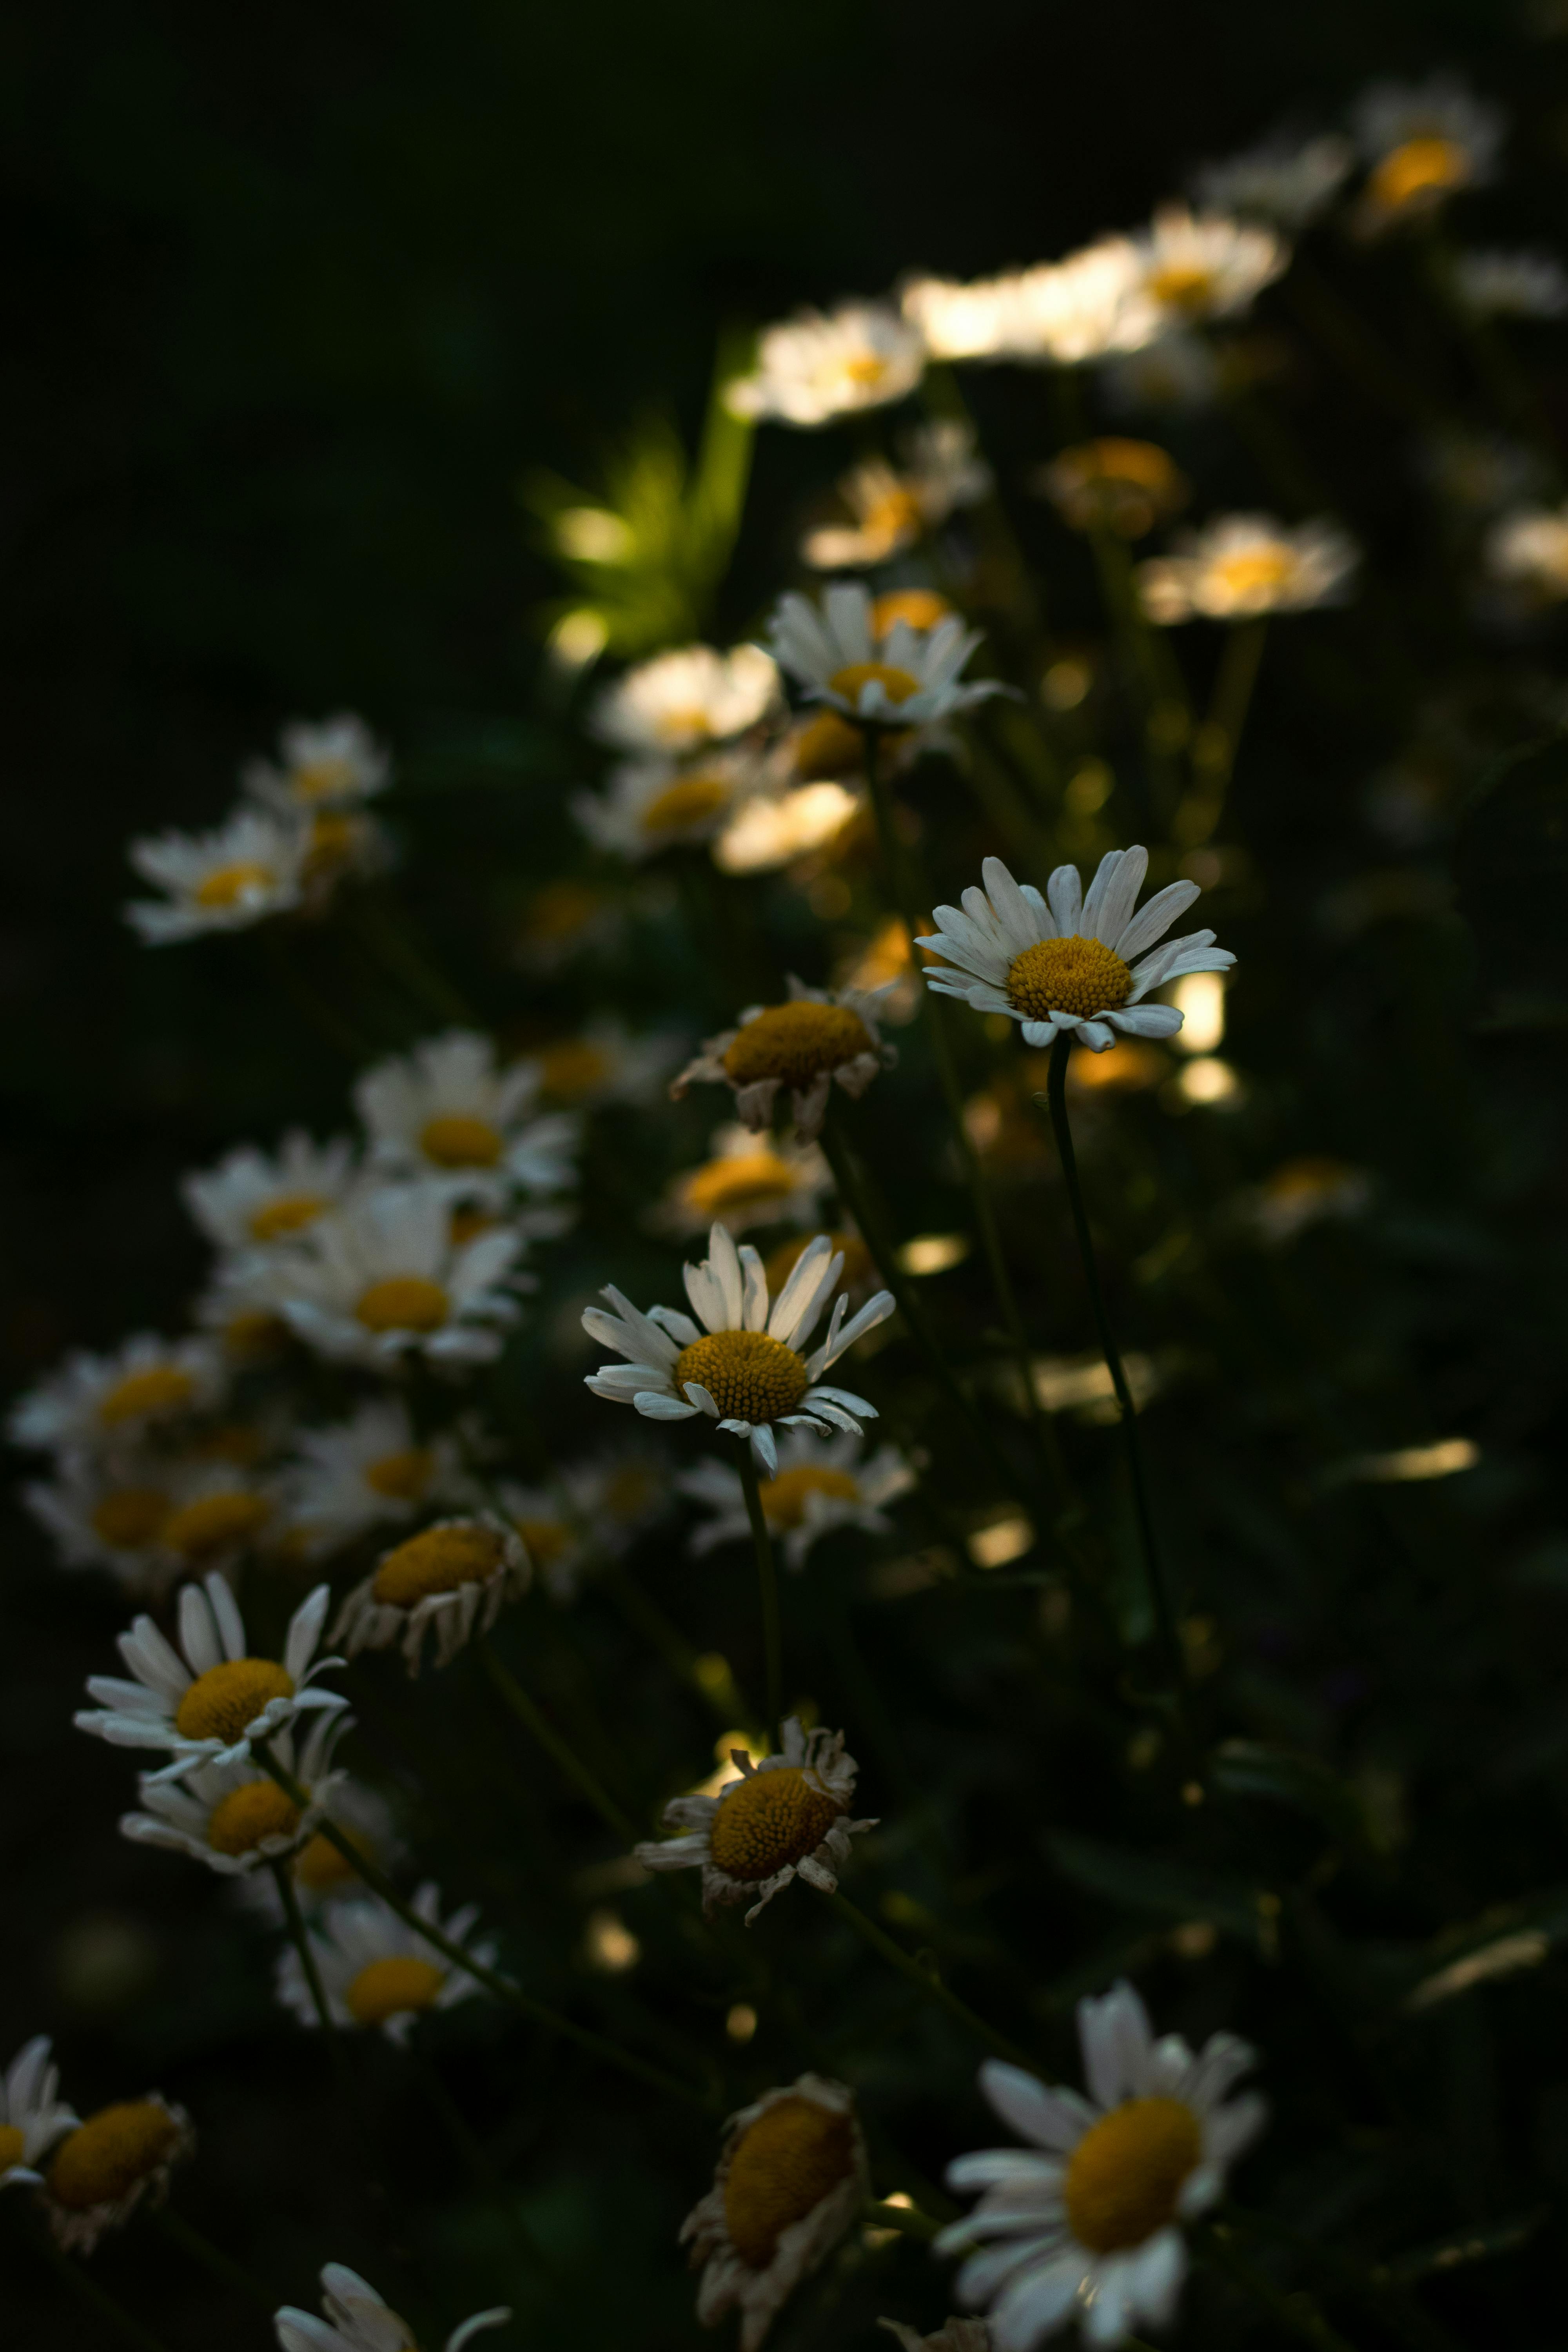 Ánh trăng đêm trên cánh đồng hoa trắng tinh khôi, có phải là một chủ đề cực kỳ say đắm và lãng mạn? Chúng ta hãy cùng ngắm nhìn các hình ảnh hoa trắng của thiên nhiên để tạm bỏ qua những lo toan cuộc sống và thấy cuộc đời thật đẹp.